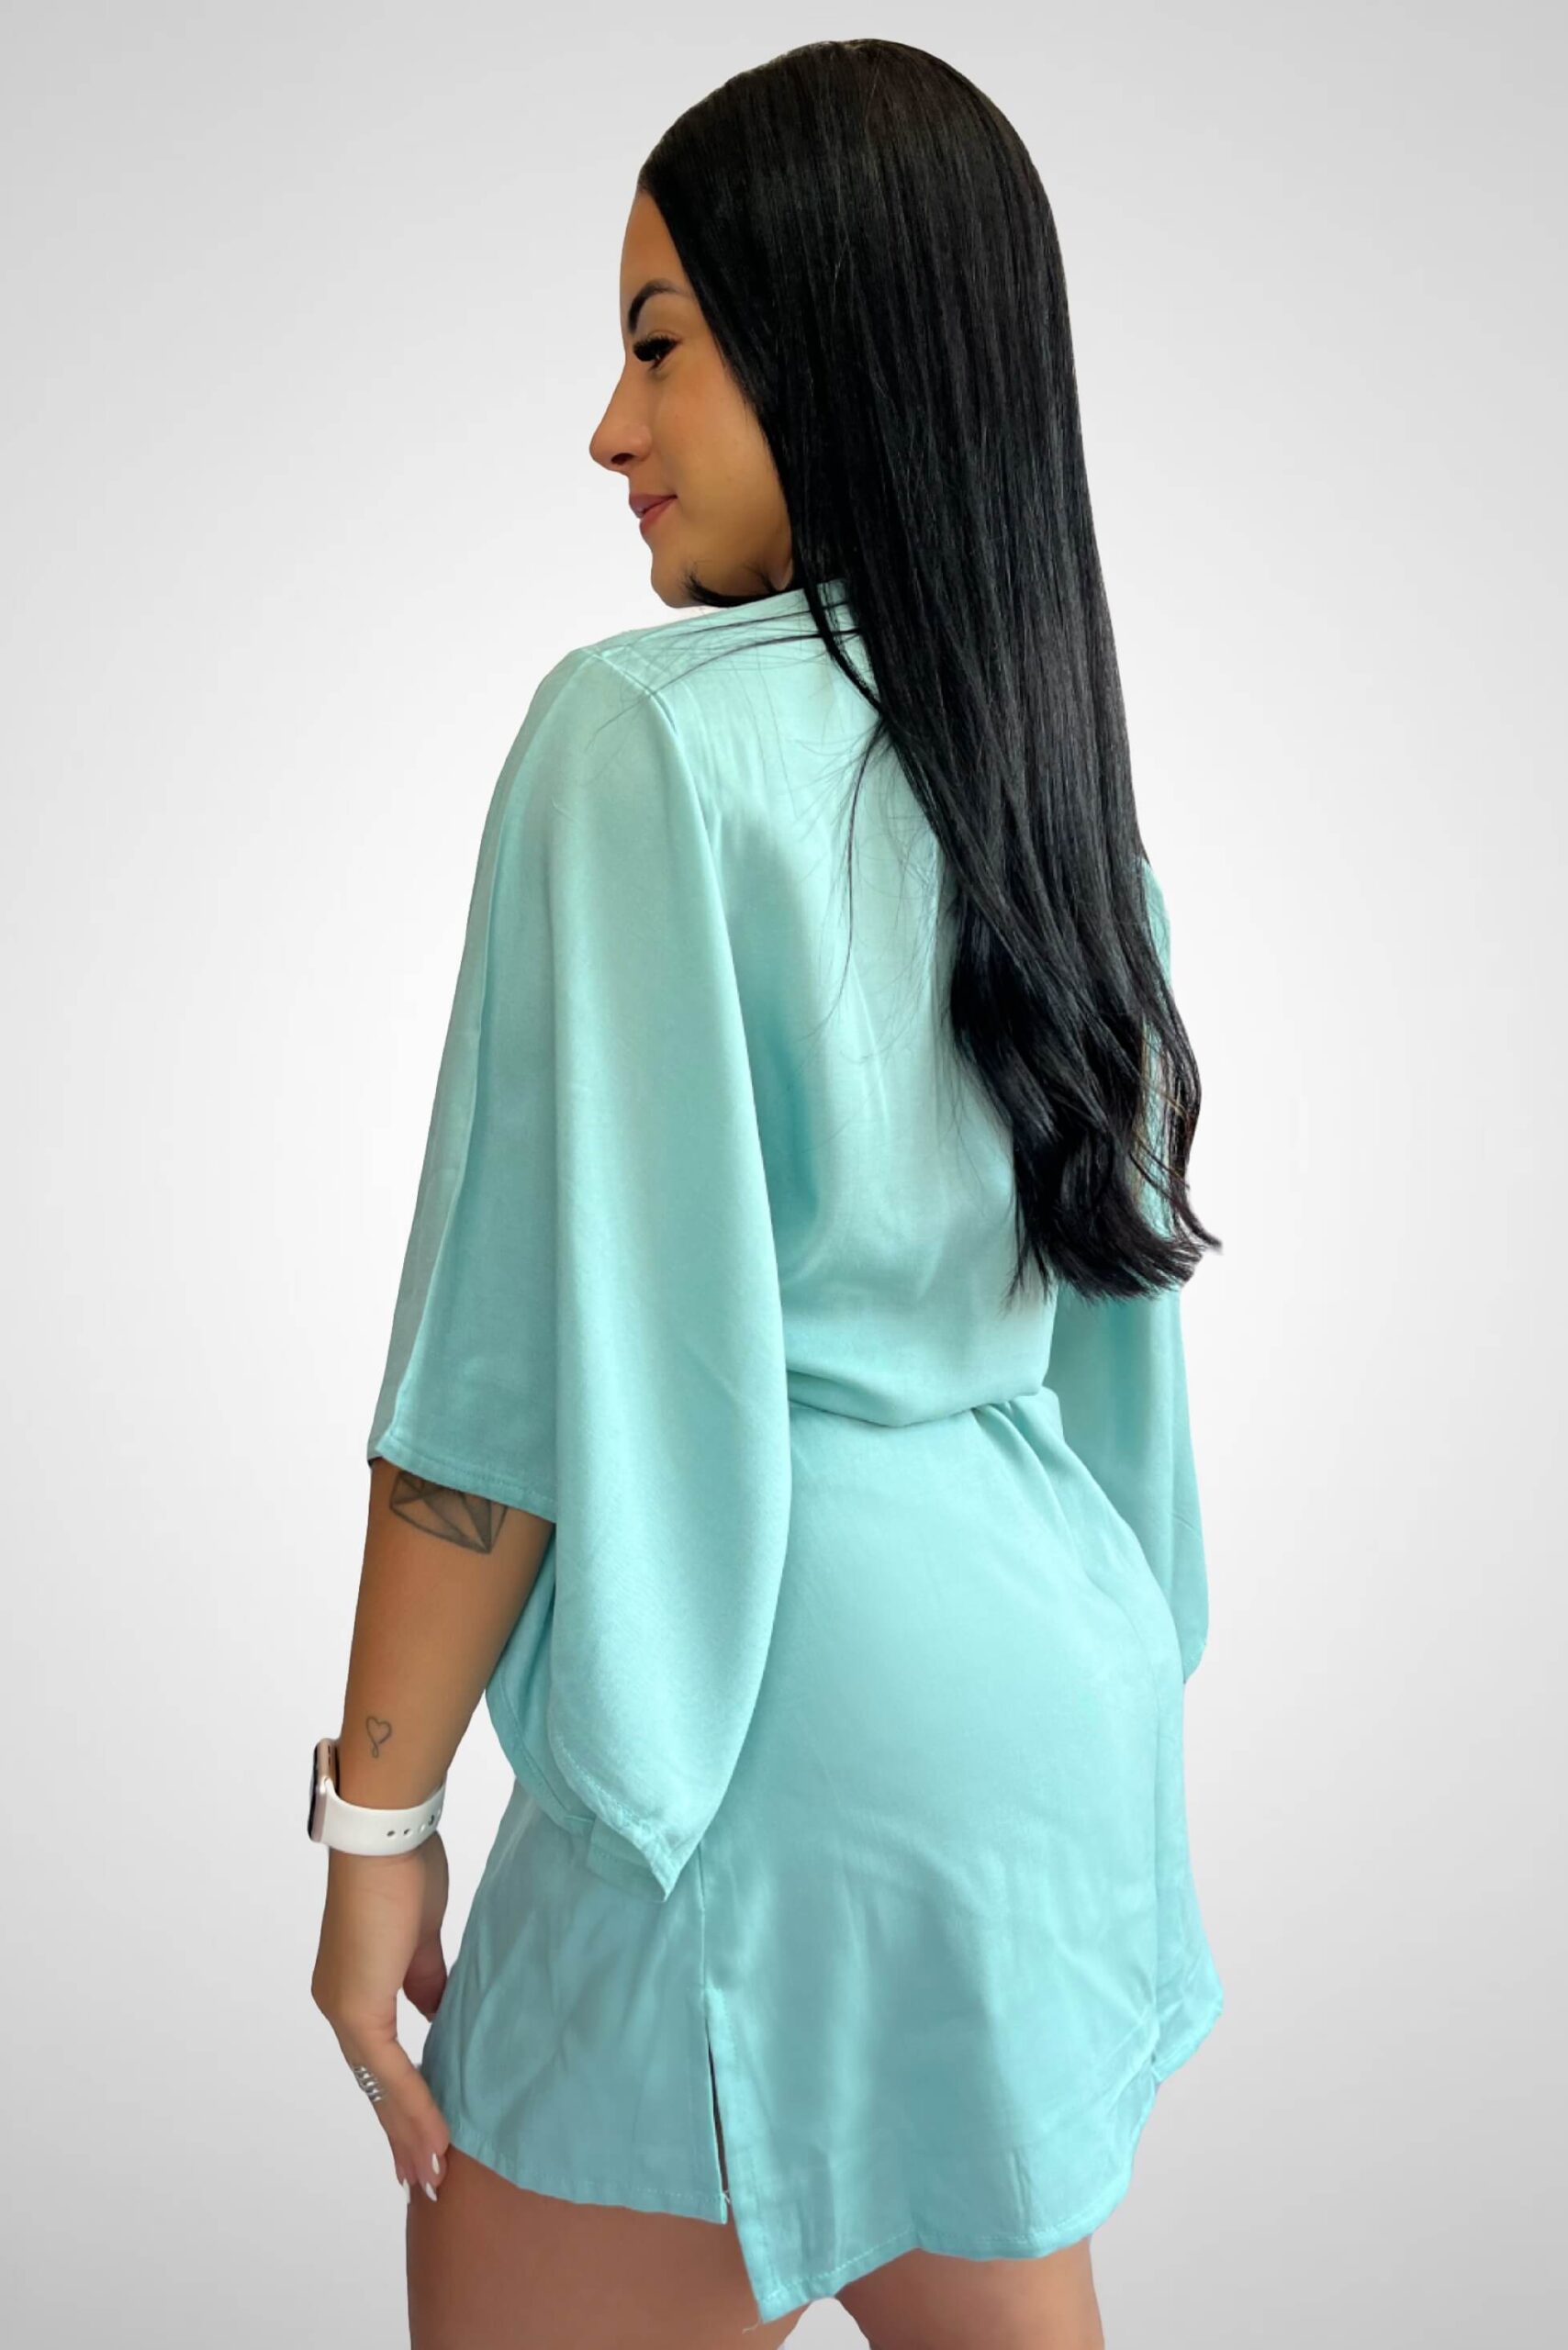 Saída de Praia modelo Kimono Verde Claro com faixa para amarração na cintura Tecido: Viscose Composição: 100% Viscose Coleção: Verão 2024 Disponível nos tamanhos: P M G